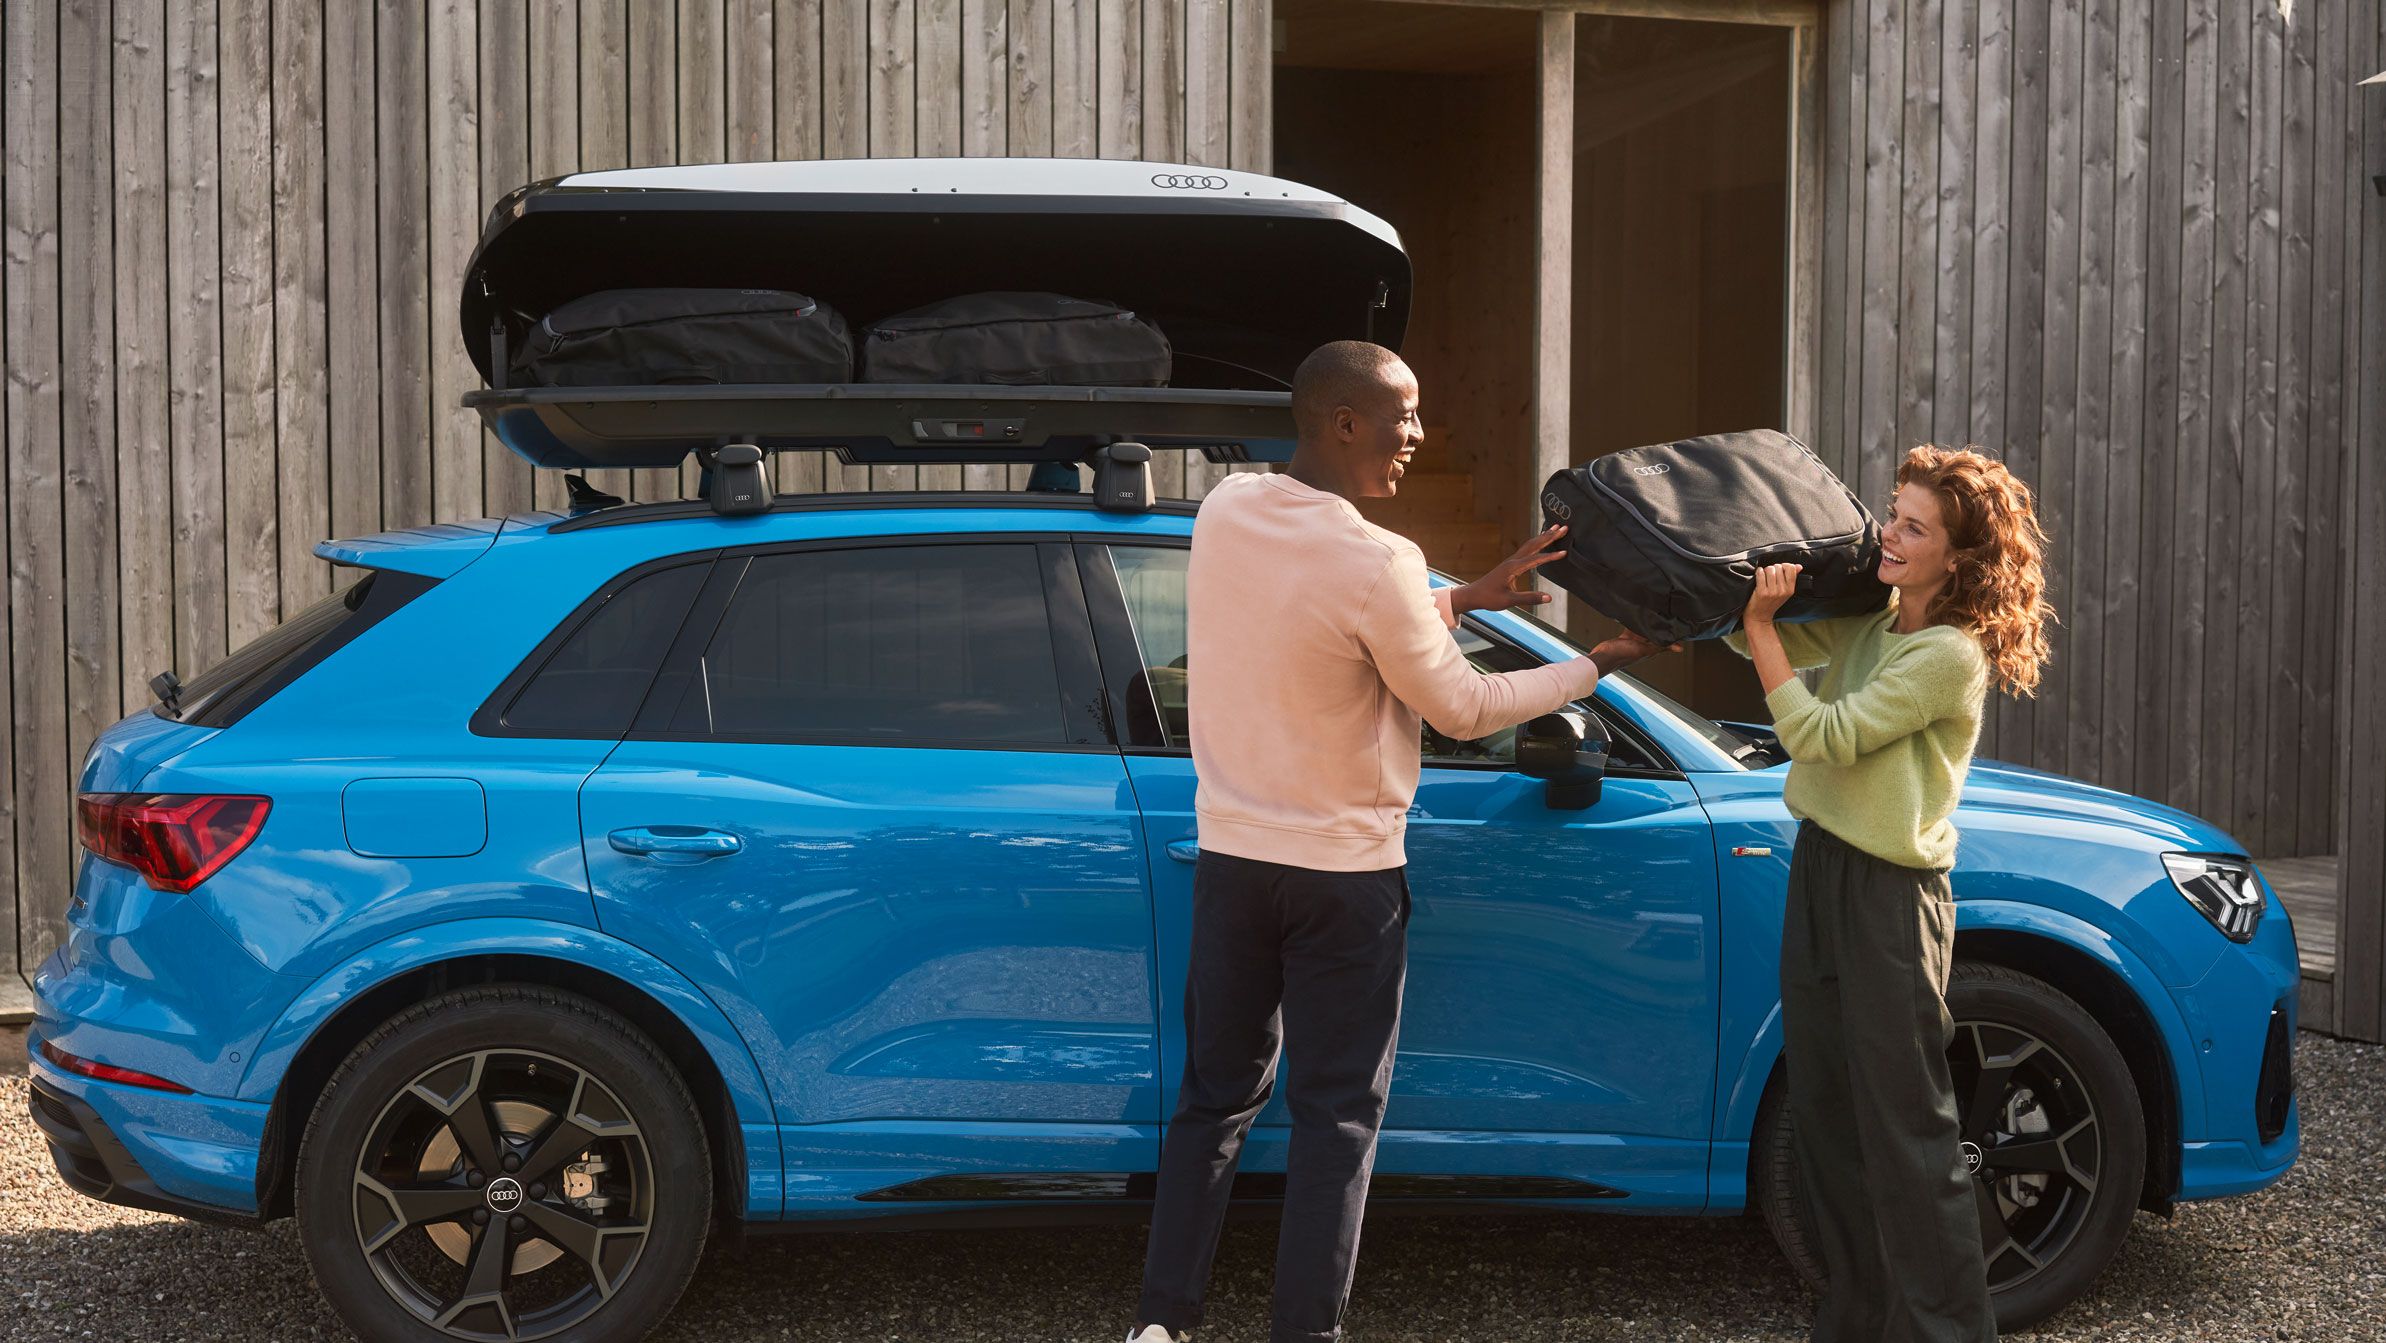 Zwei Personen beladen eine Audi Dachbox auf einem blauen Audi